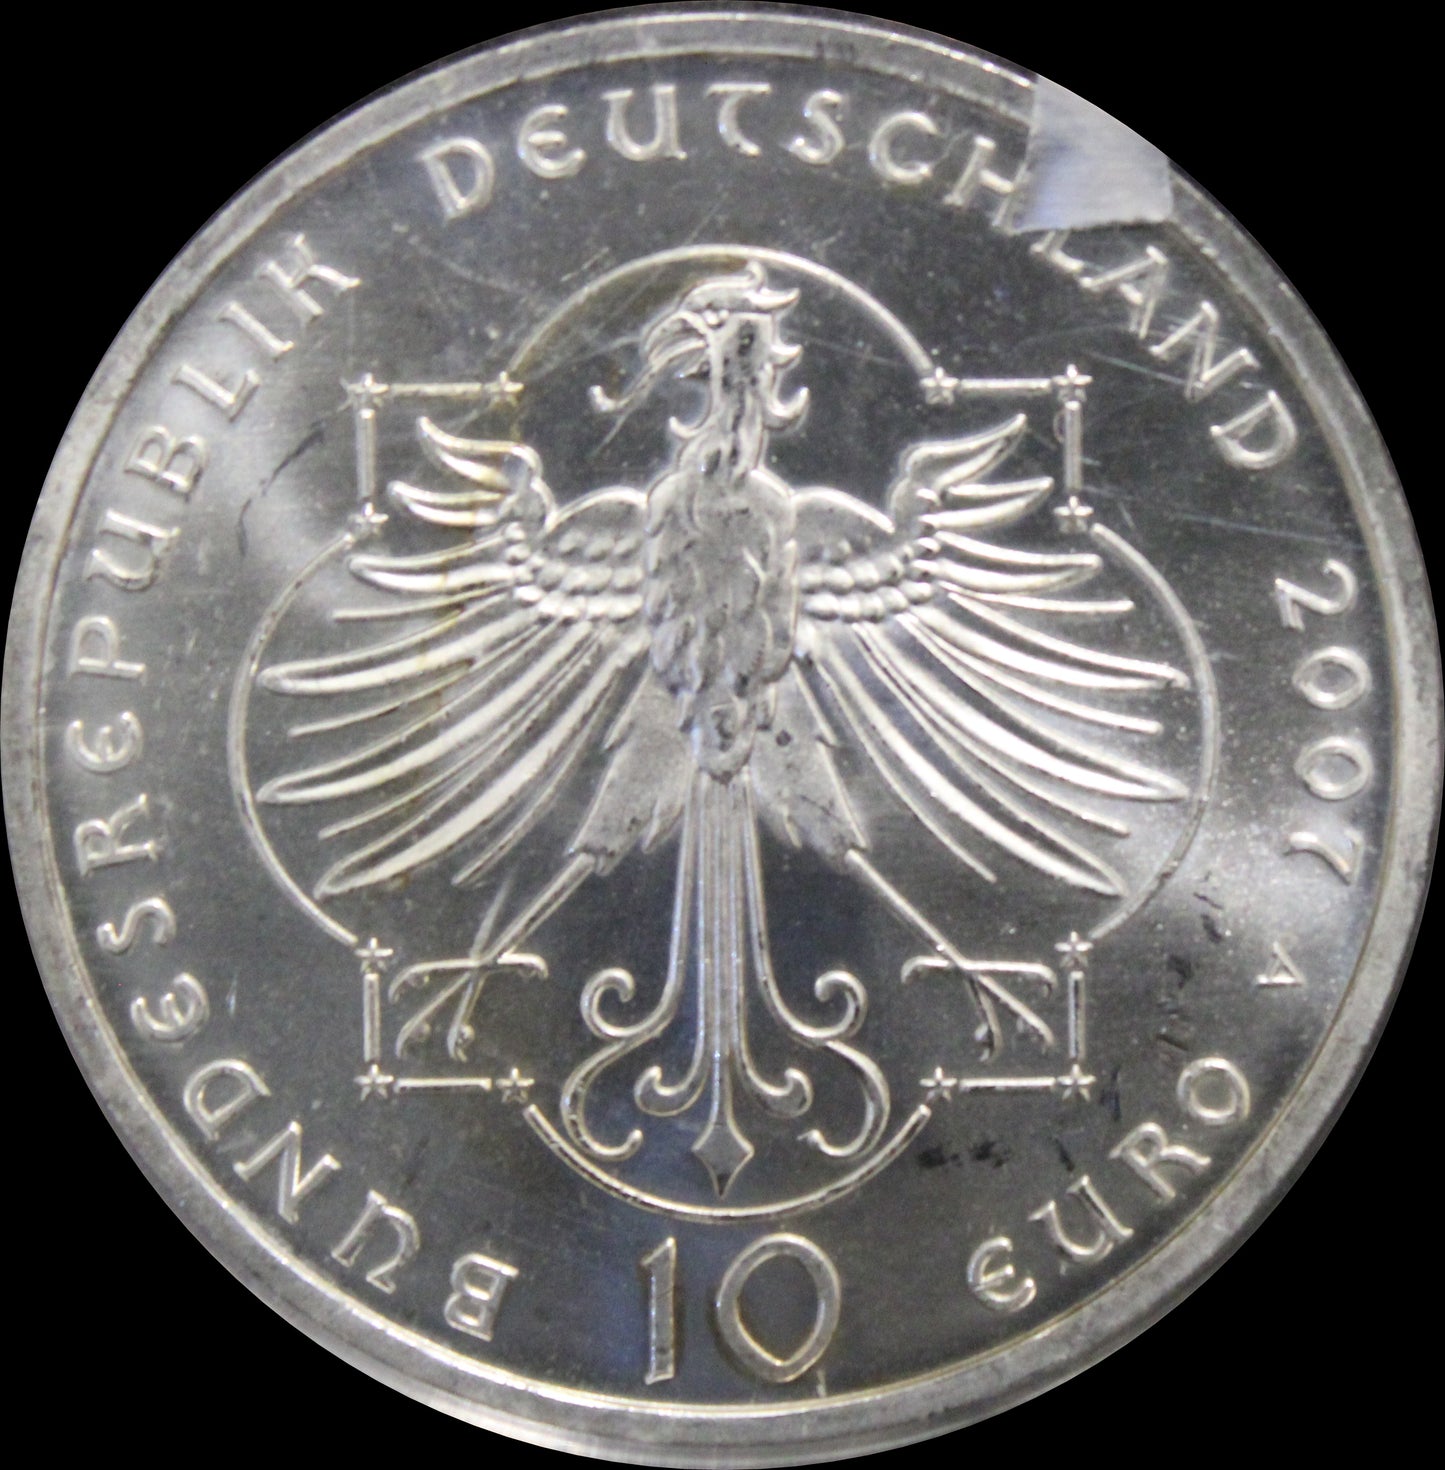 800. GEBURTSTAG ELISABETH VON THÜRINGEN, Serie 10 € Silber Gedenkmünzen Deutschland, Stempelglanz, 2007